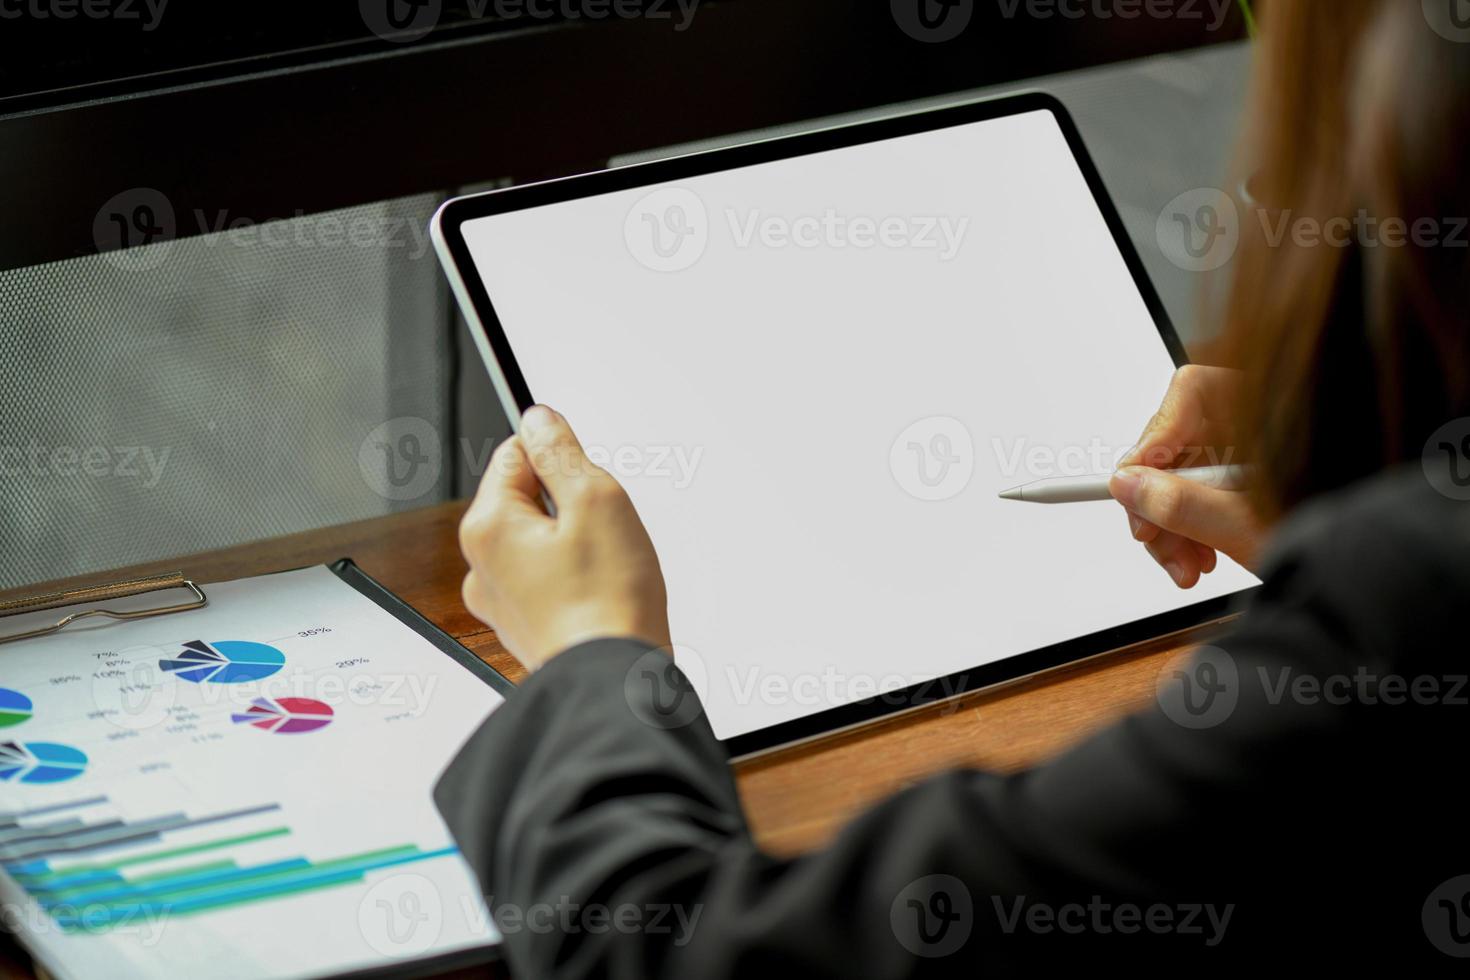 femme d'affaires travaillant sur une tablette moderne à écran blanc au bureau. photo